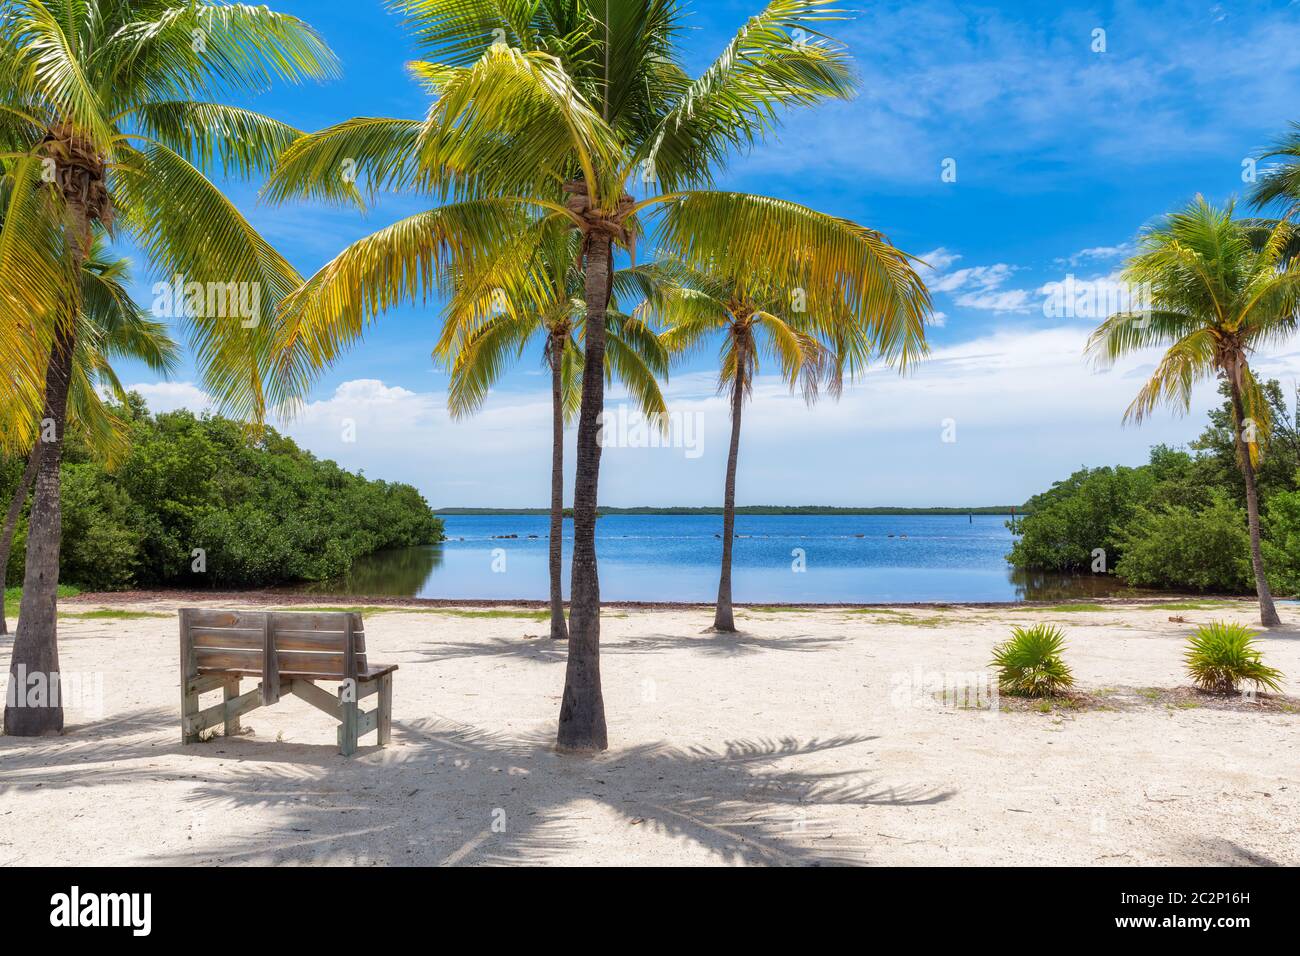 Palmiers sur une plage tropicale dans la région de Florida Keys. Banque D'Images